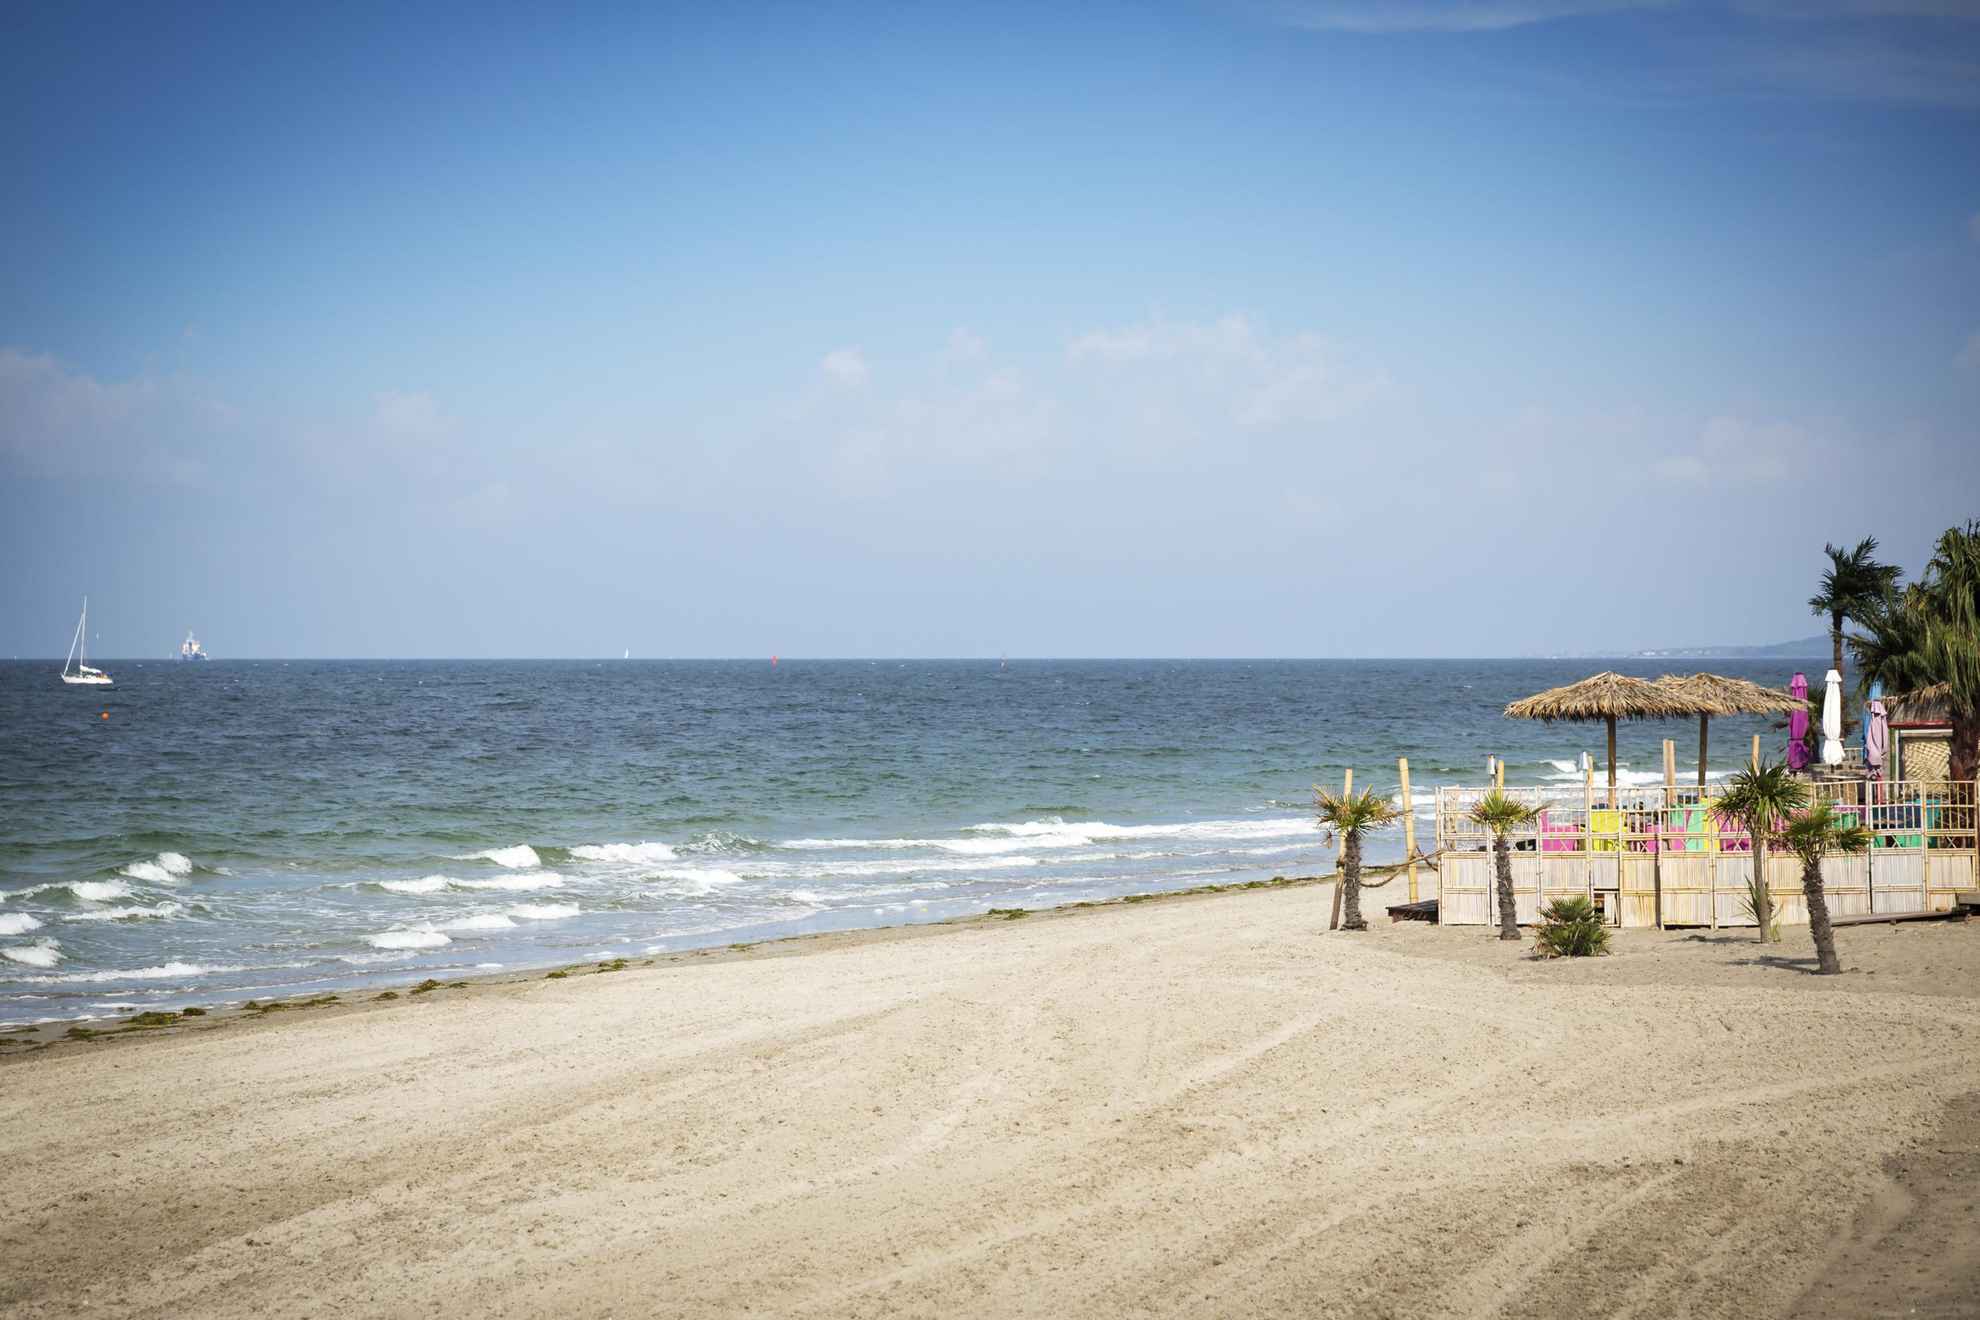 Ein aufgeräumter Sandstrand am Meer. Rechts stehen Palmen und Sonnenschirme mit Strohdächern.